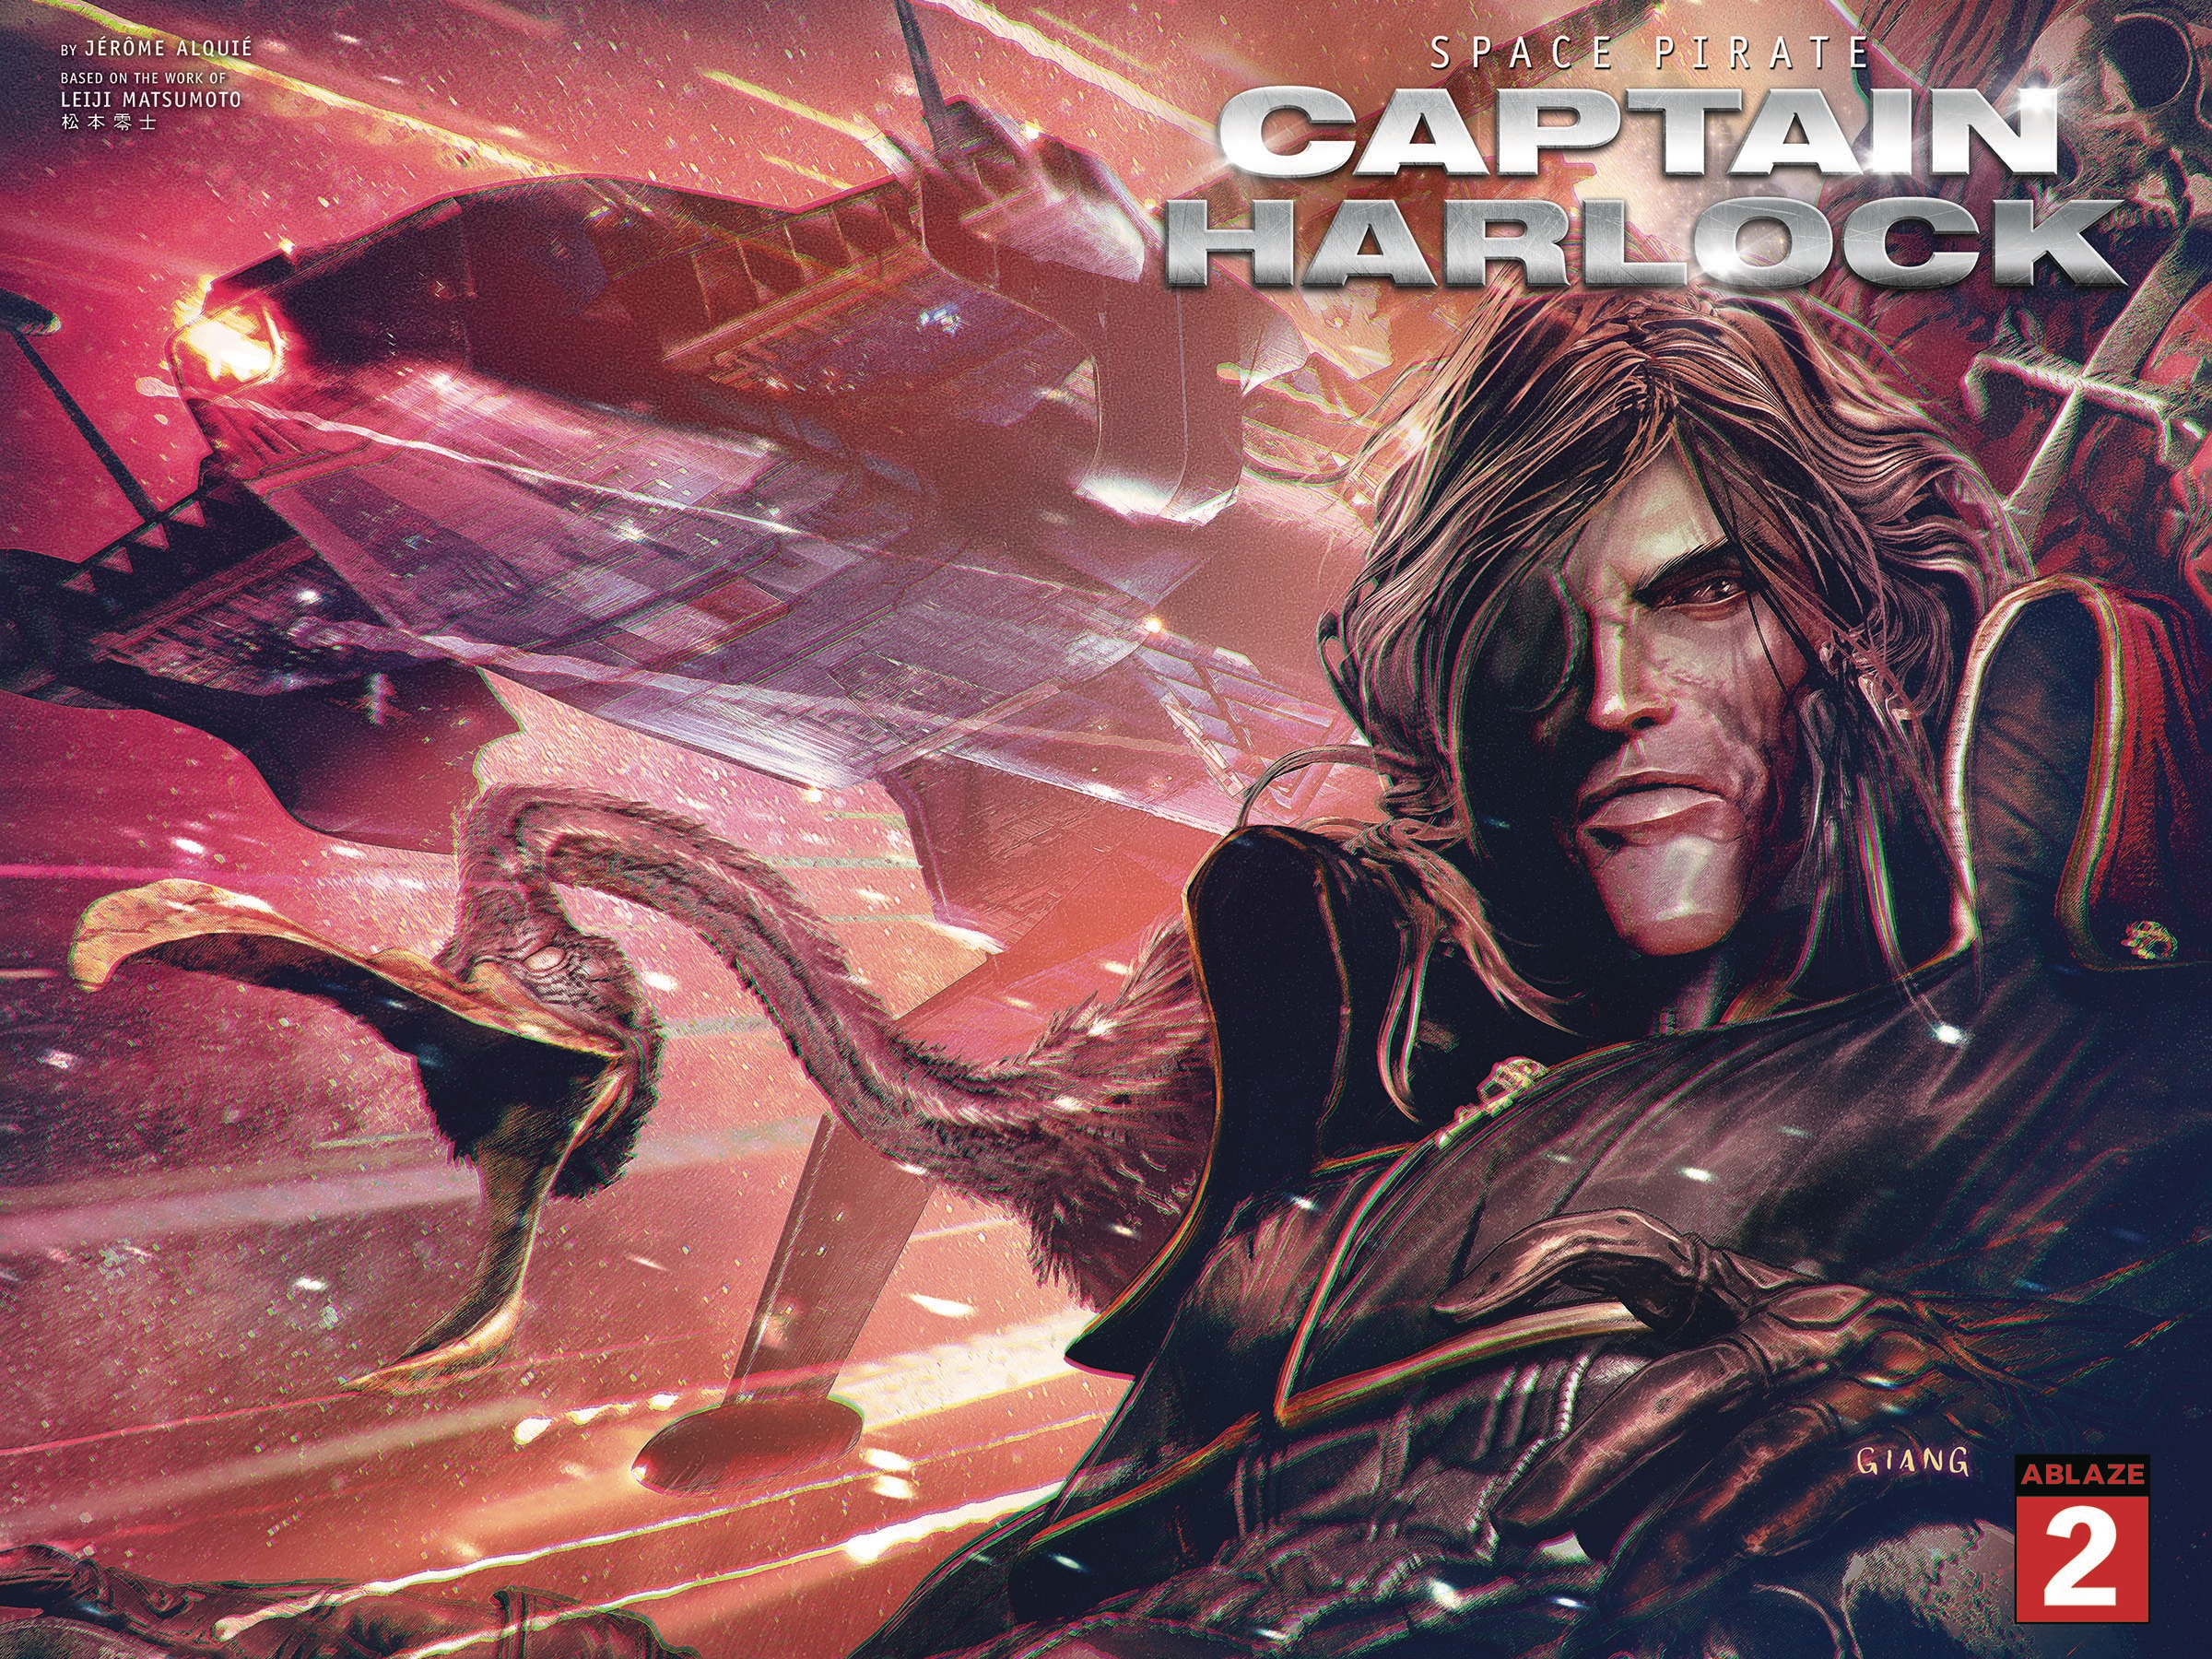 Space Pirate Capt Harlock #5 Cover B John Giang